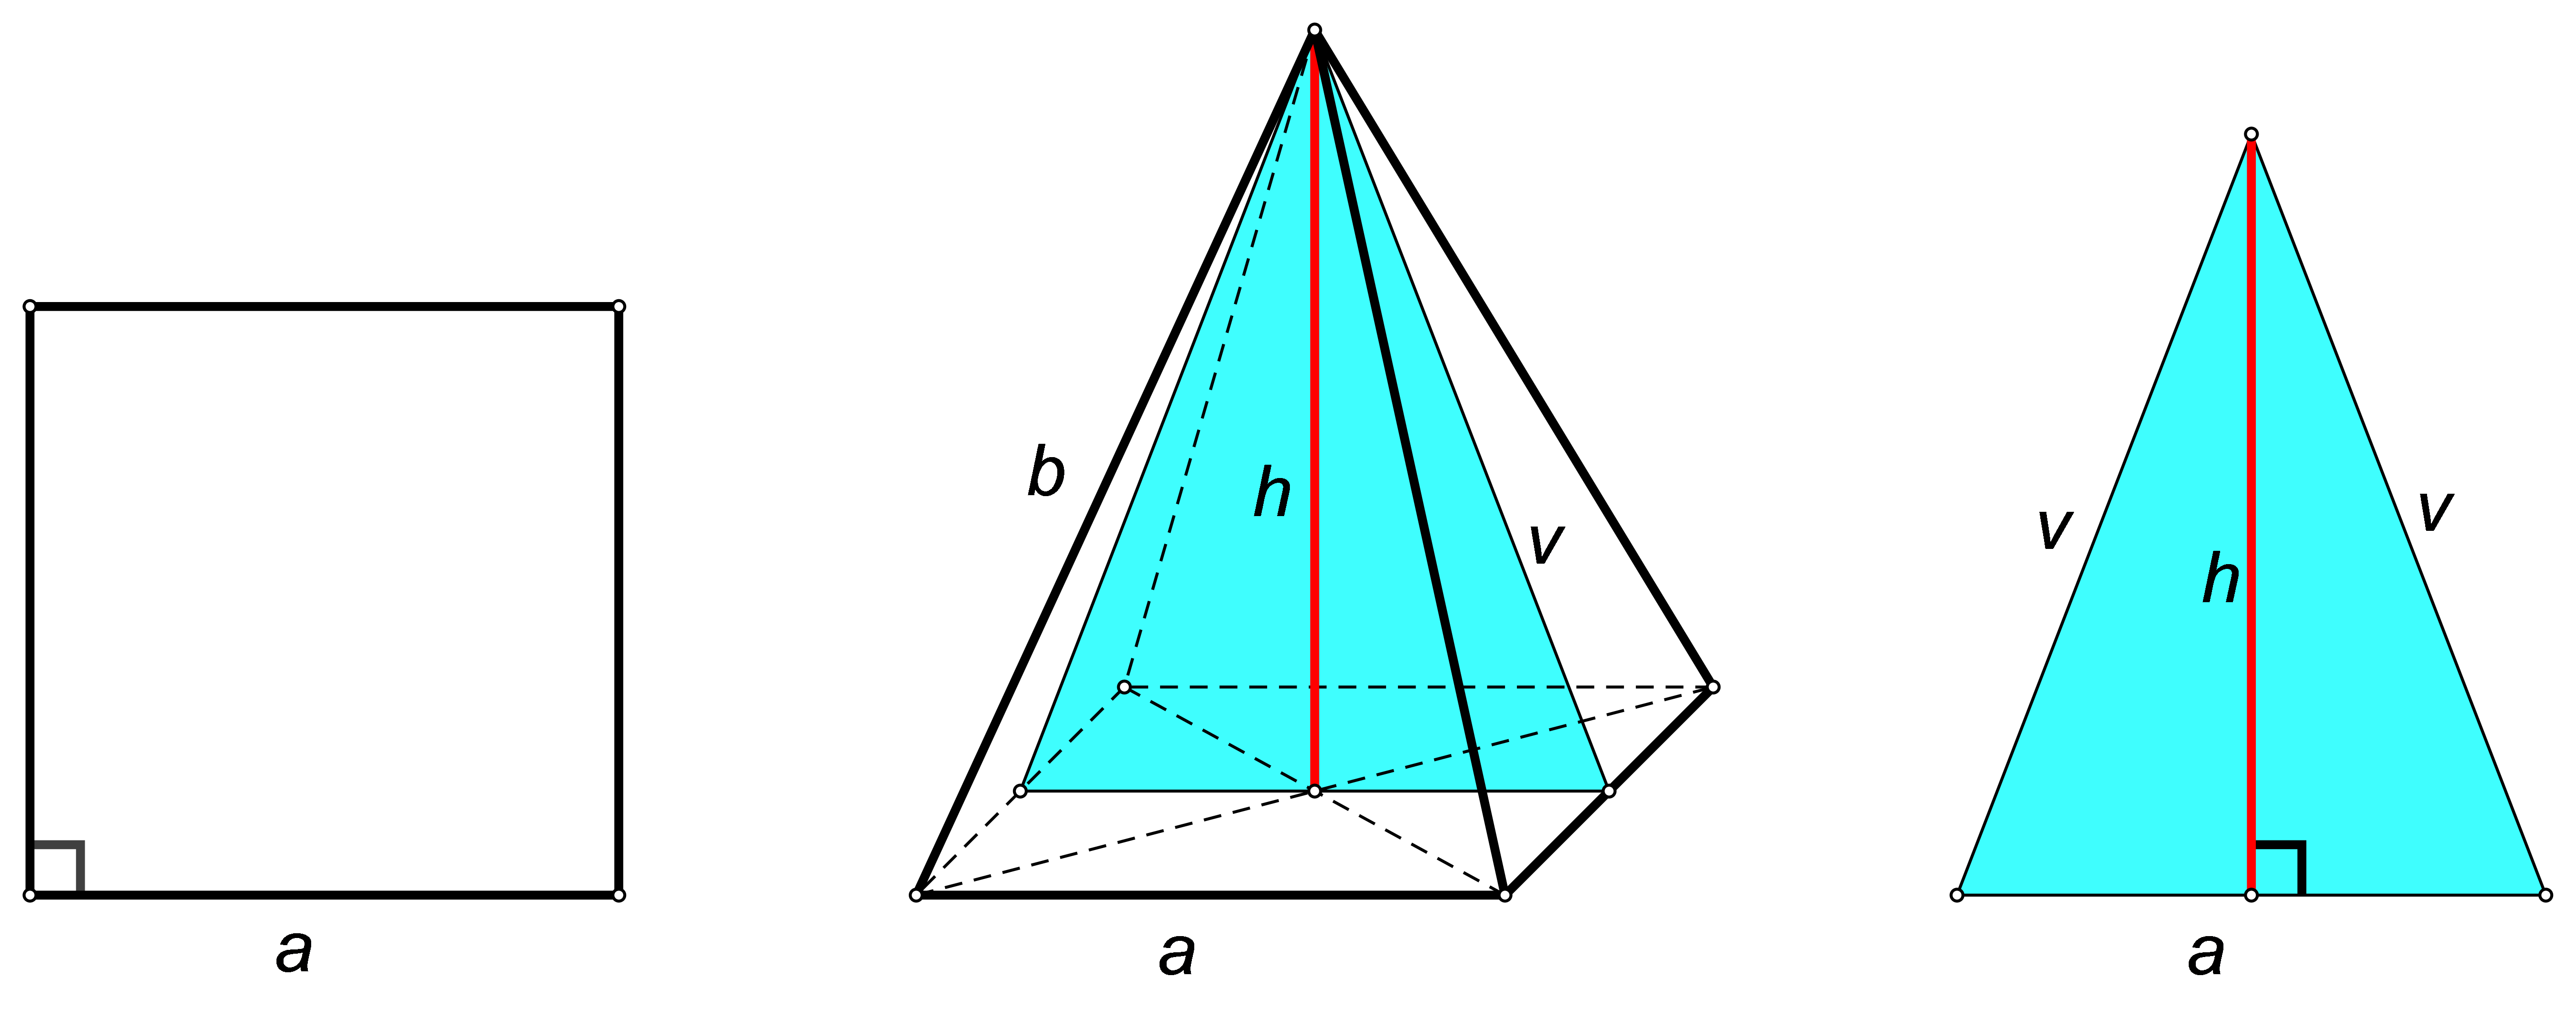 Slika prikazuje piramidu i presjek pravilne četverostrane piramide ravninom koja je određena njenim vrhom i polovištima dvaju nasuprotnih osnovnih bridova.